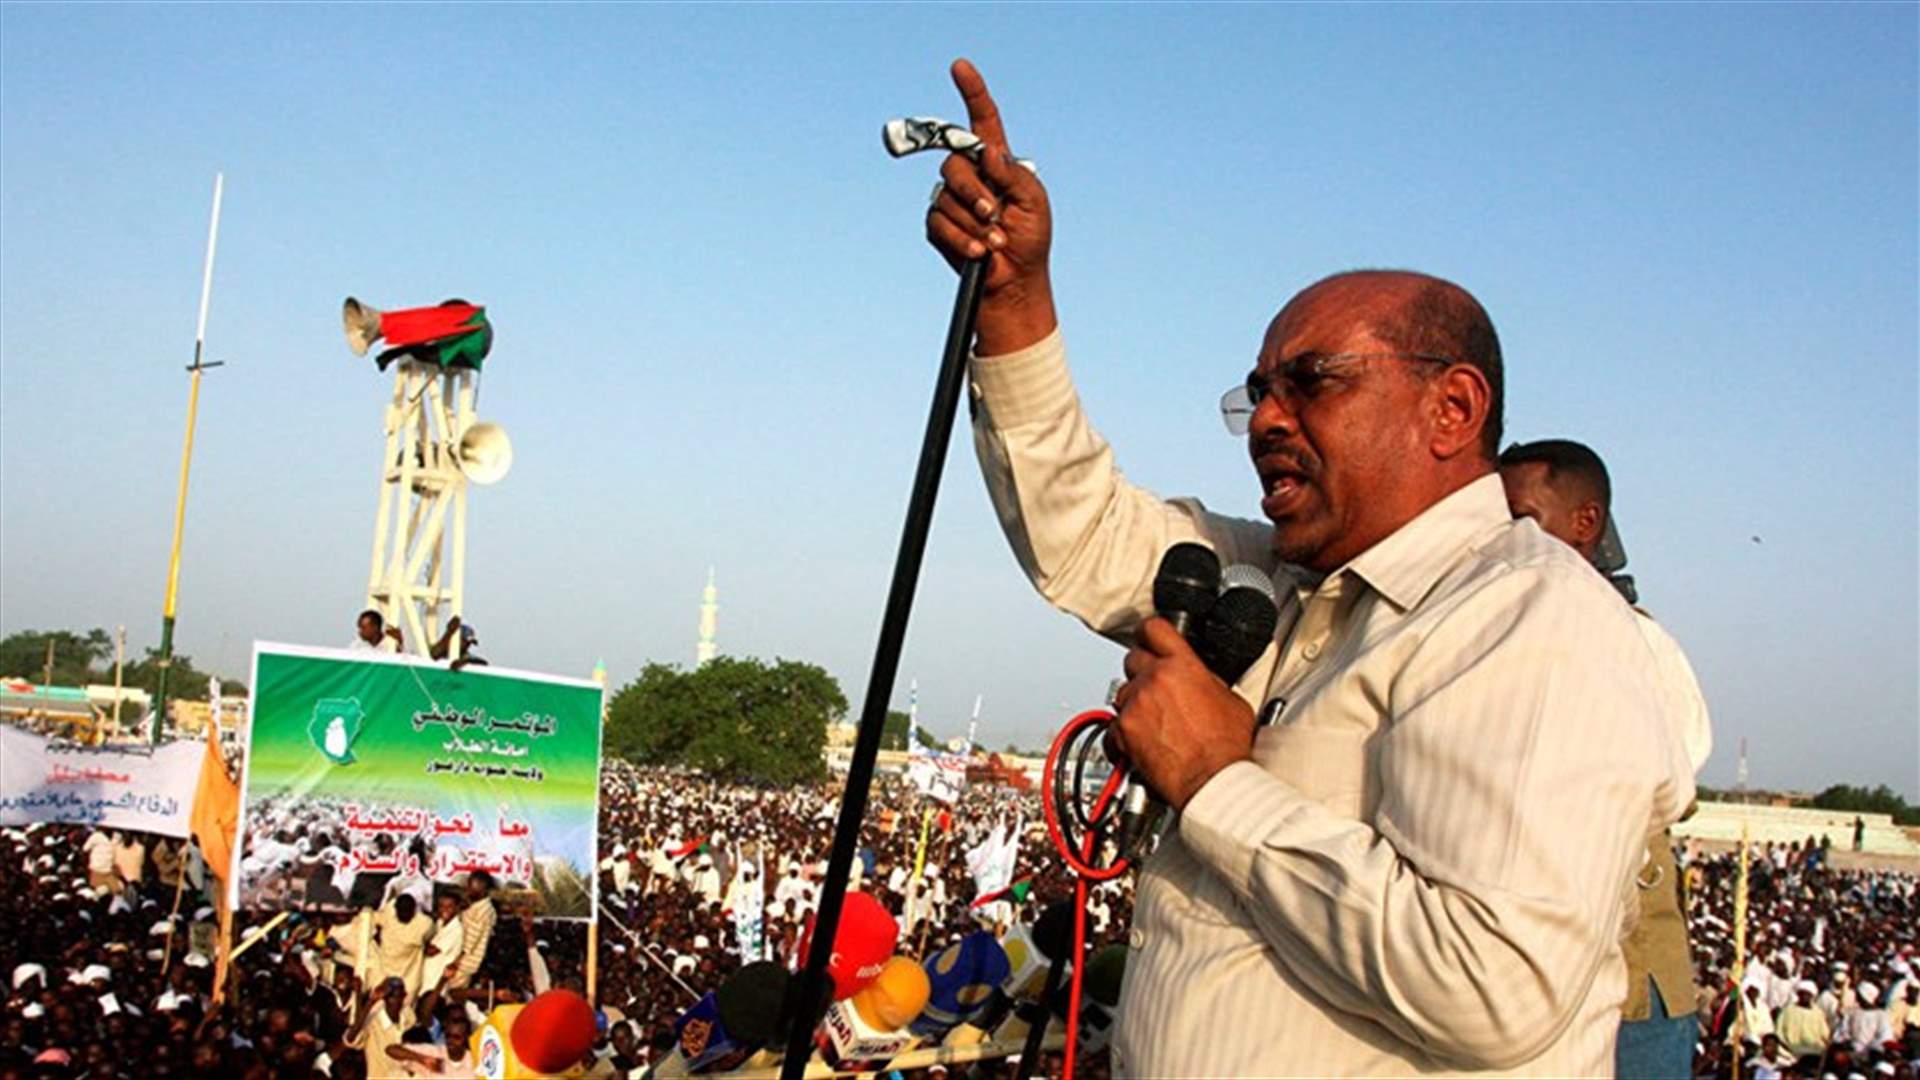 الرئيس السوداني يعيّن محمد طاهر ايلا رئيسًا للوزراء